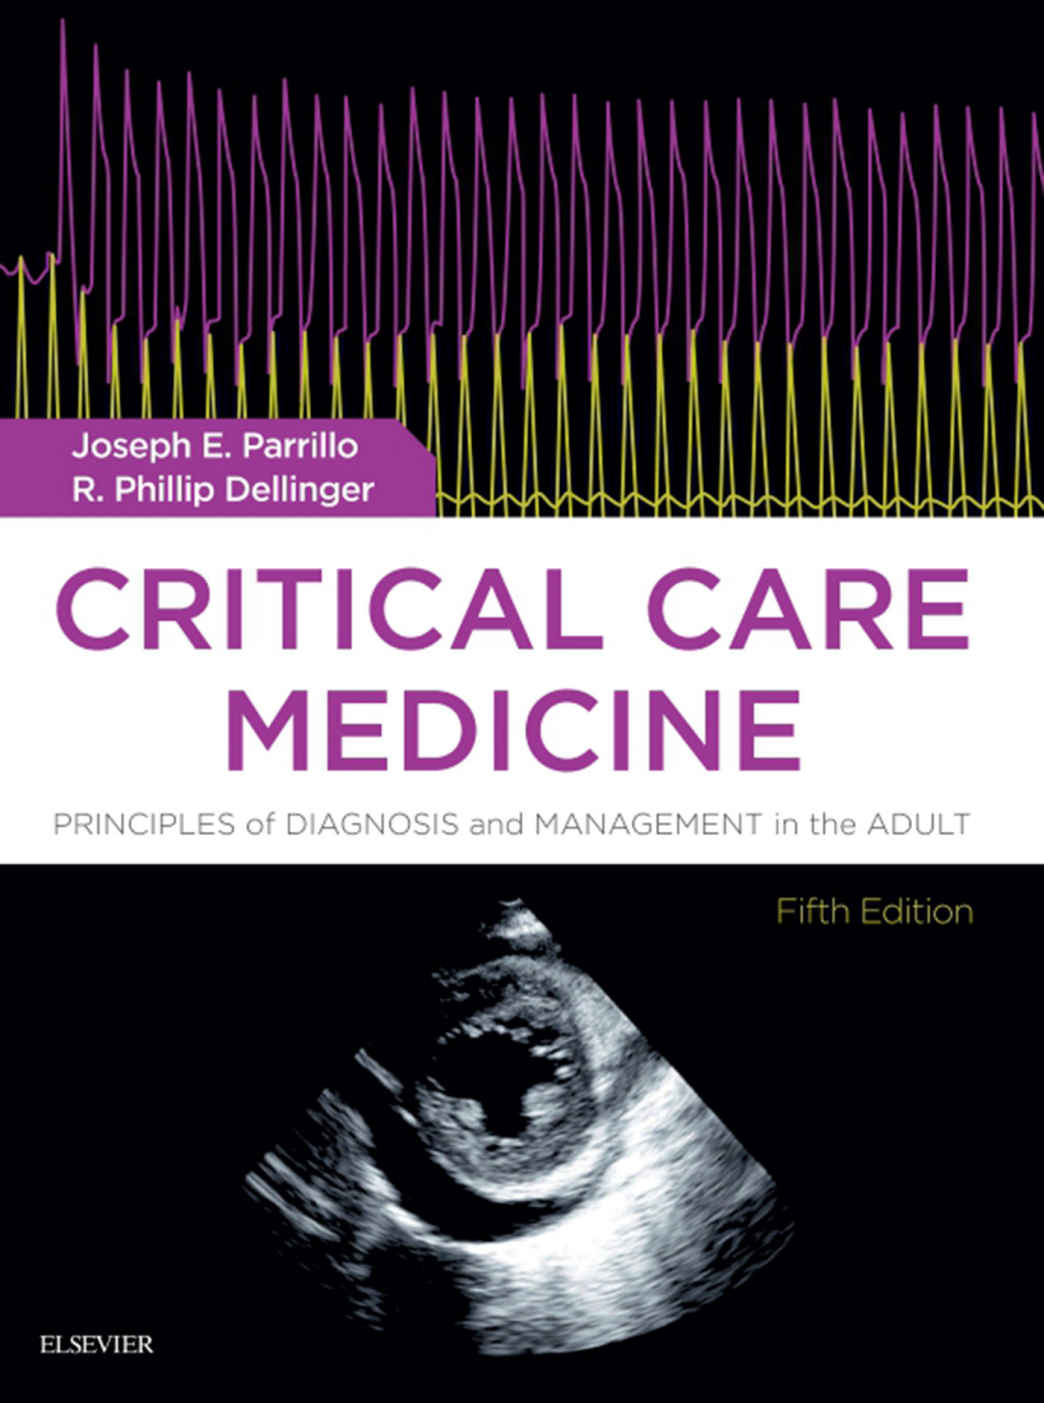 (eBook PDF)Critical Care Medicine, Fifth Edition by Joseph E. Parrillo MD FCCM , R. Phillip Dellinger MD MS 